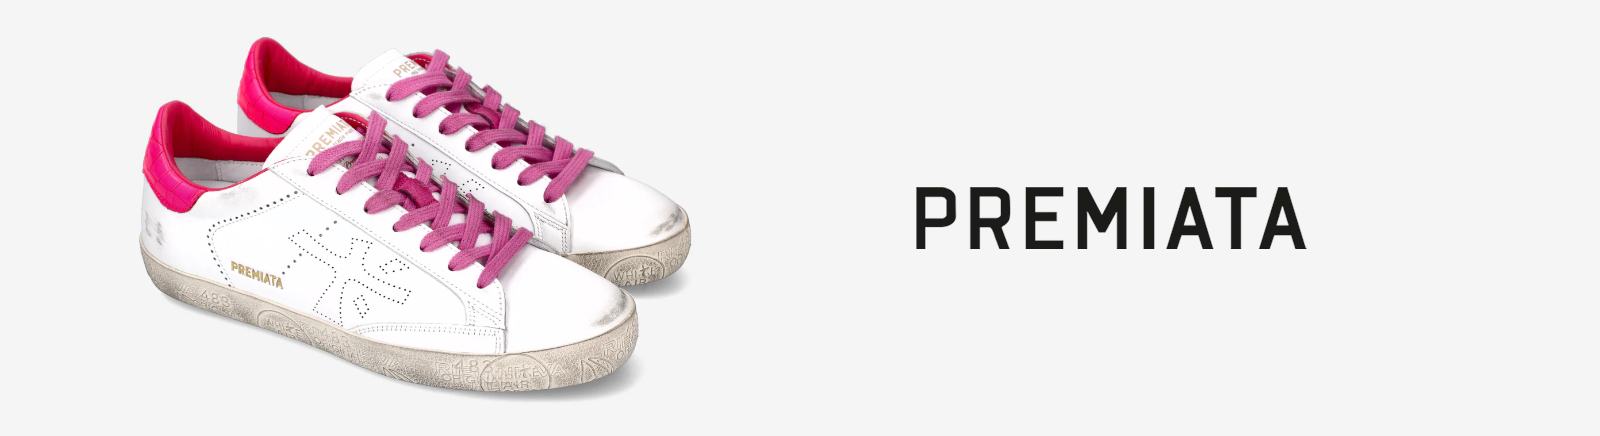 Premiata Damenschuhe online kaufen im Shop von Prange